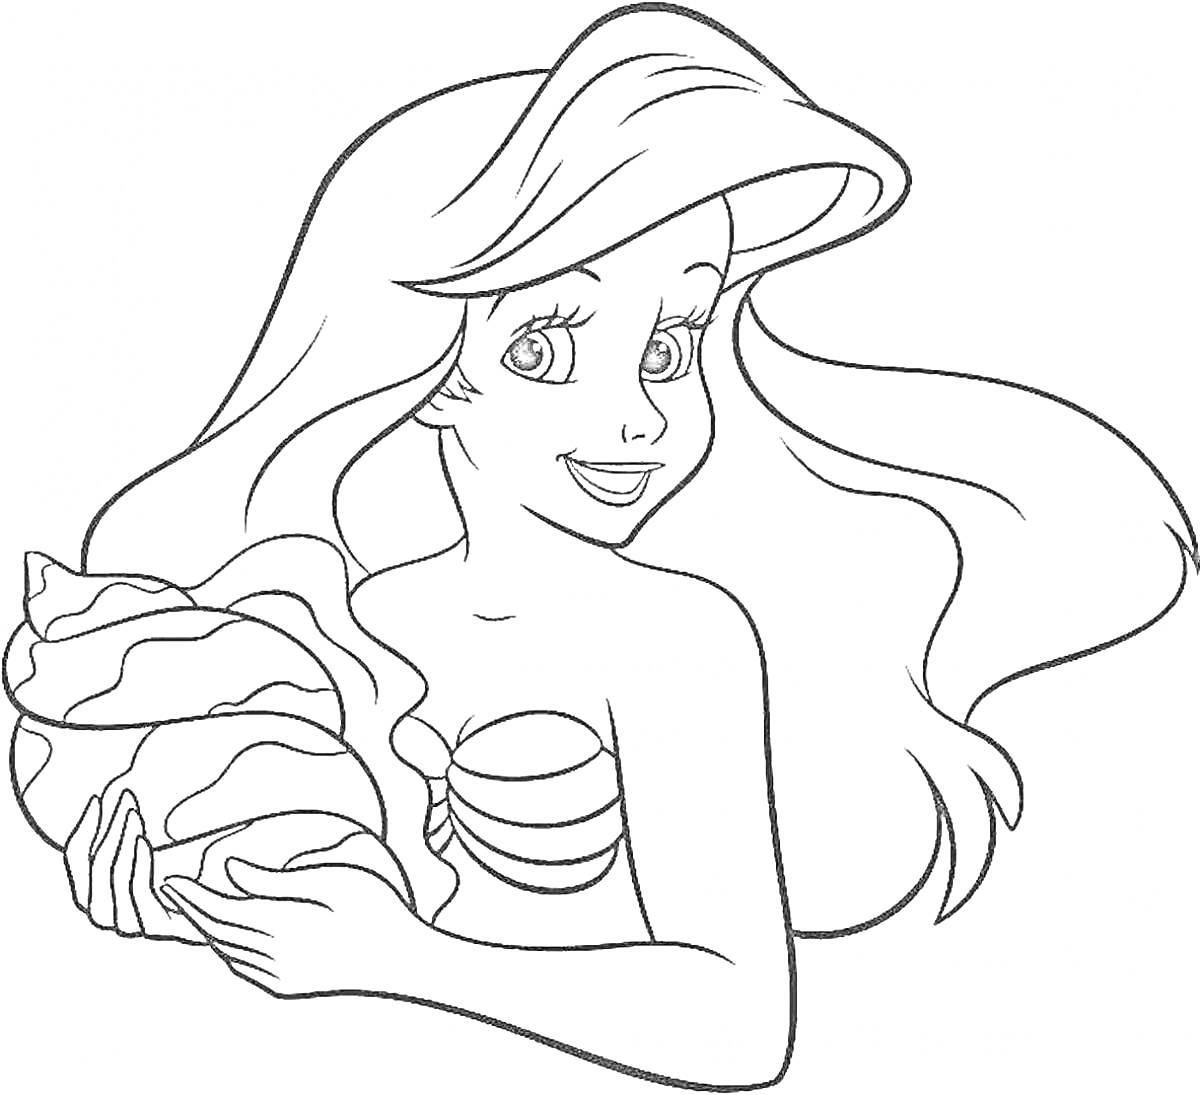 Раскраска Русалка с длинными волосами и ракушкой в руках